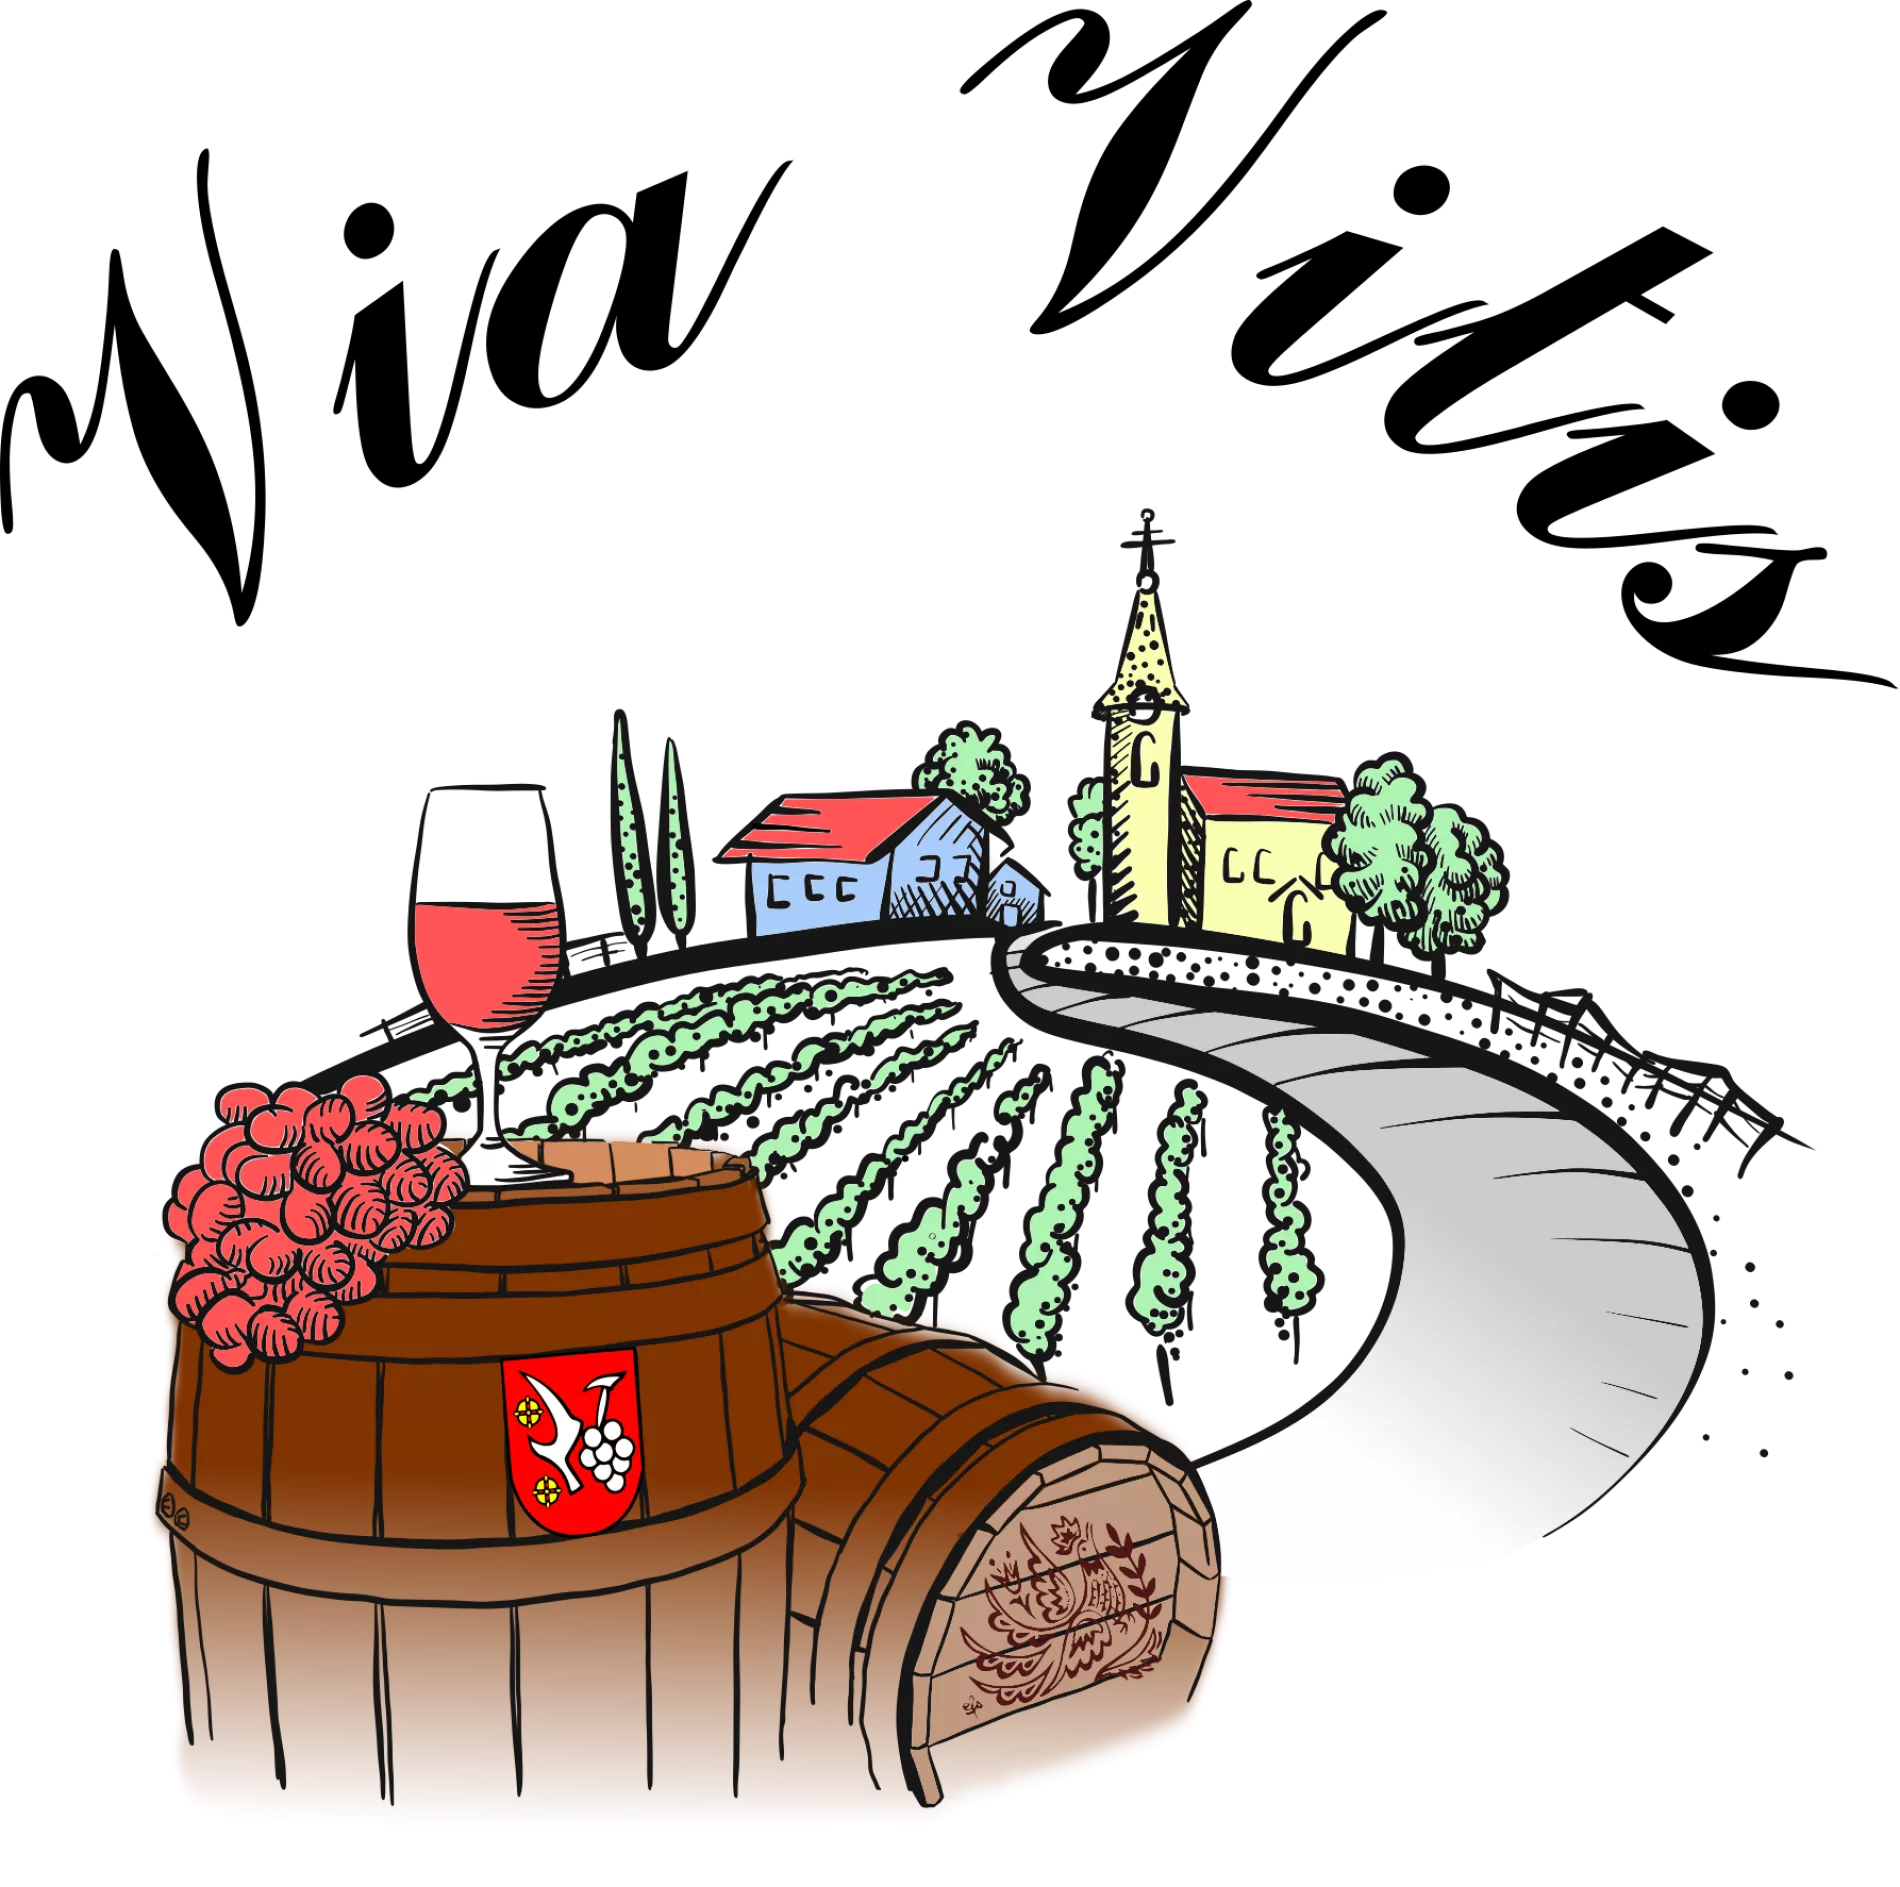 Via Vitis – Vajnorský vinohradnícky spolok